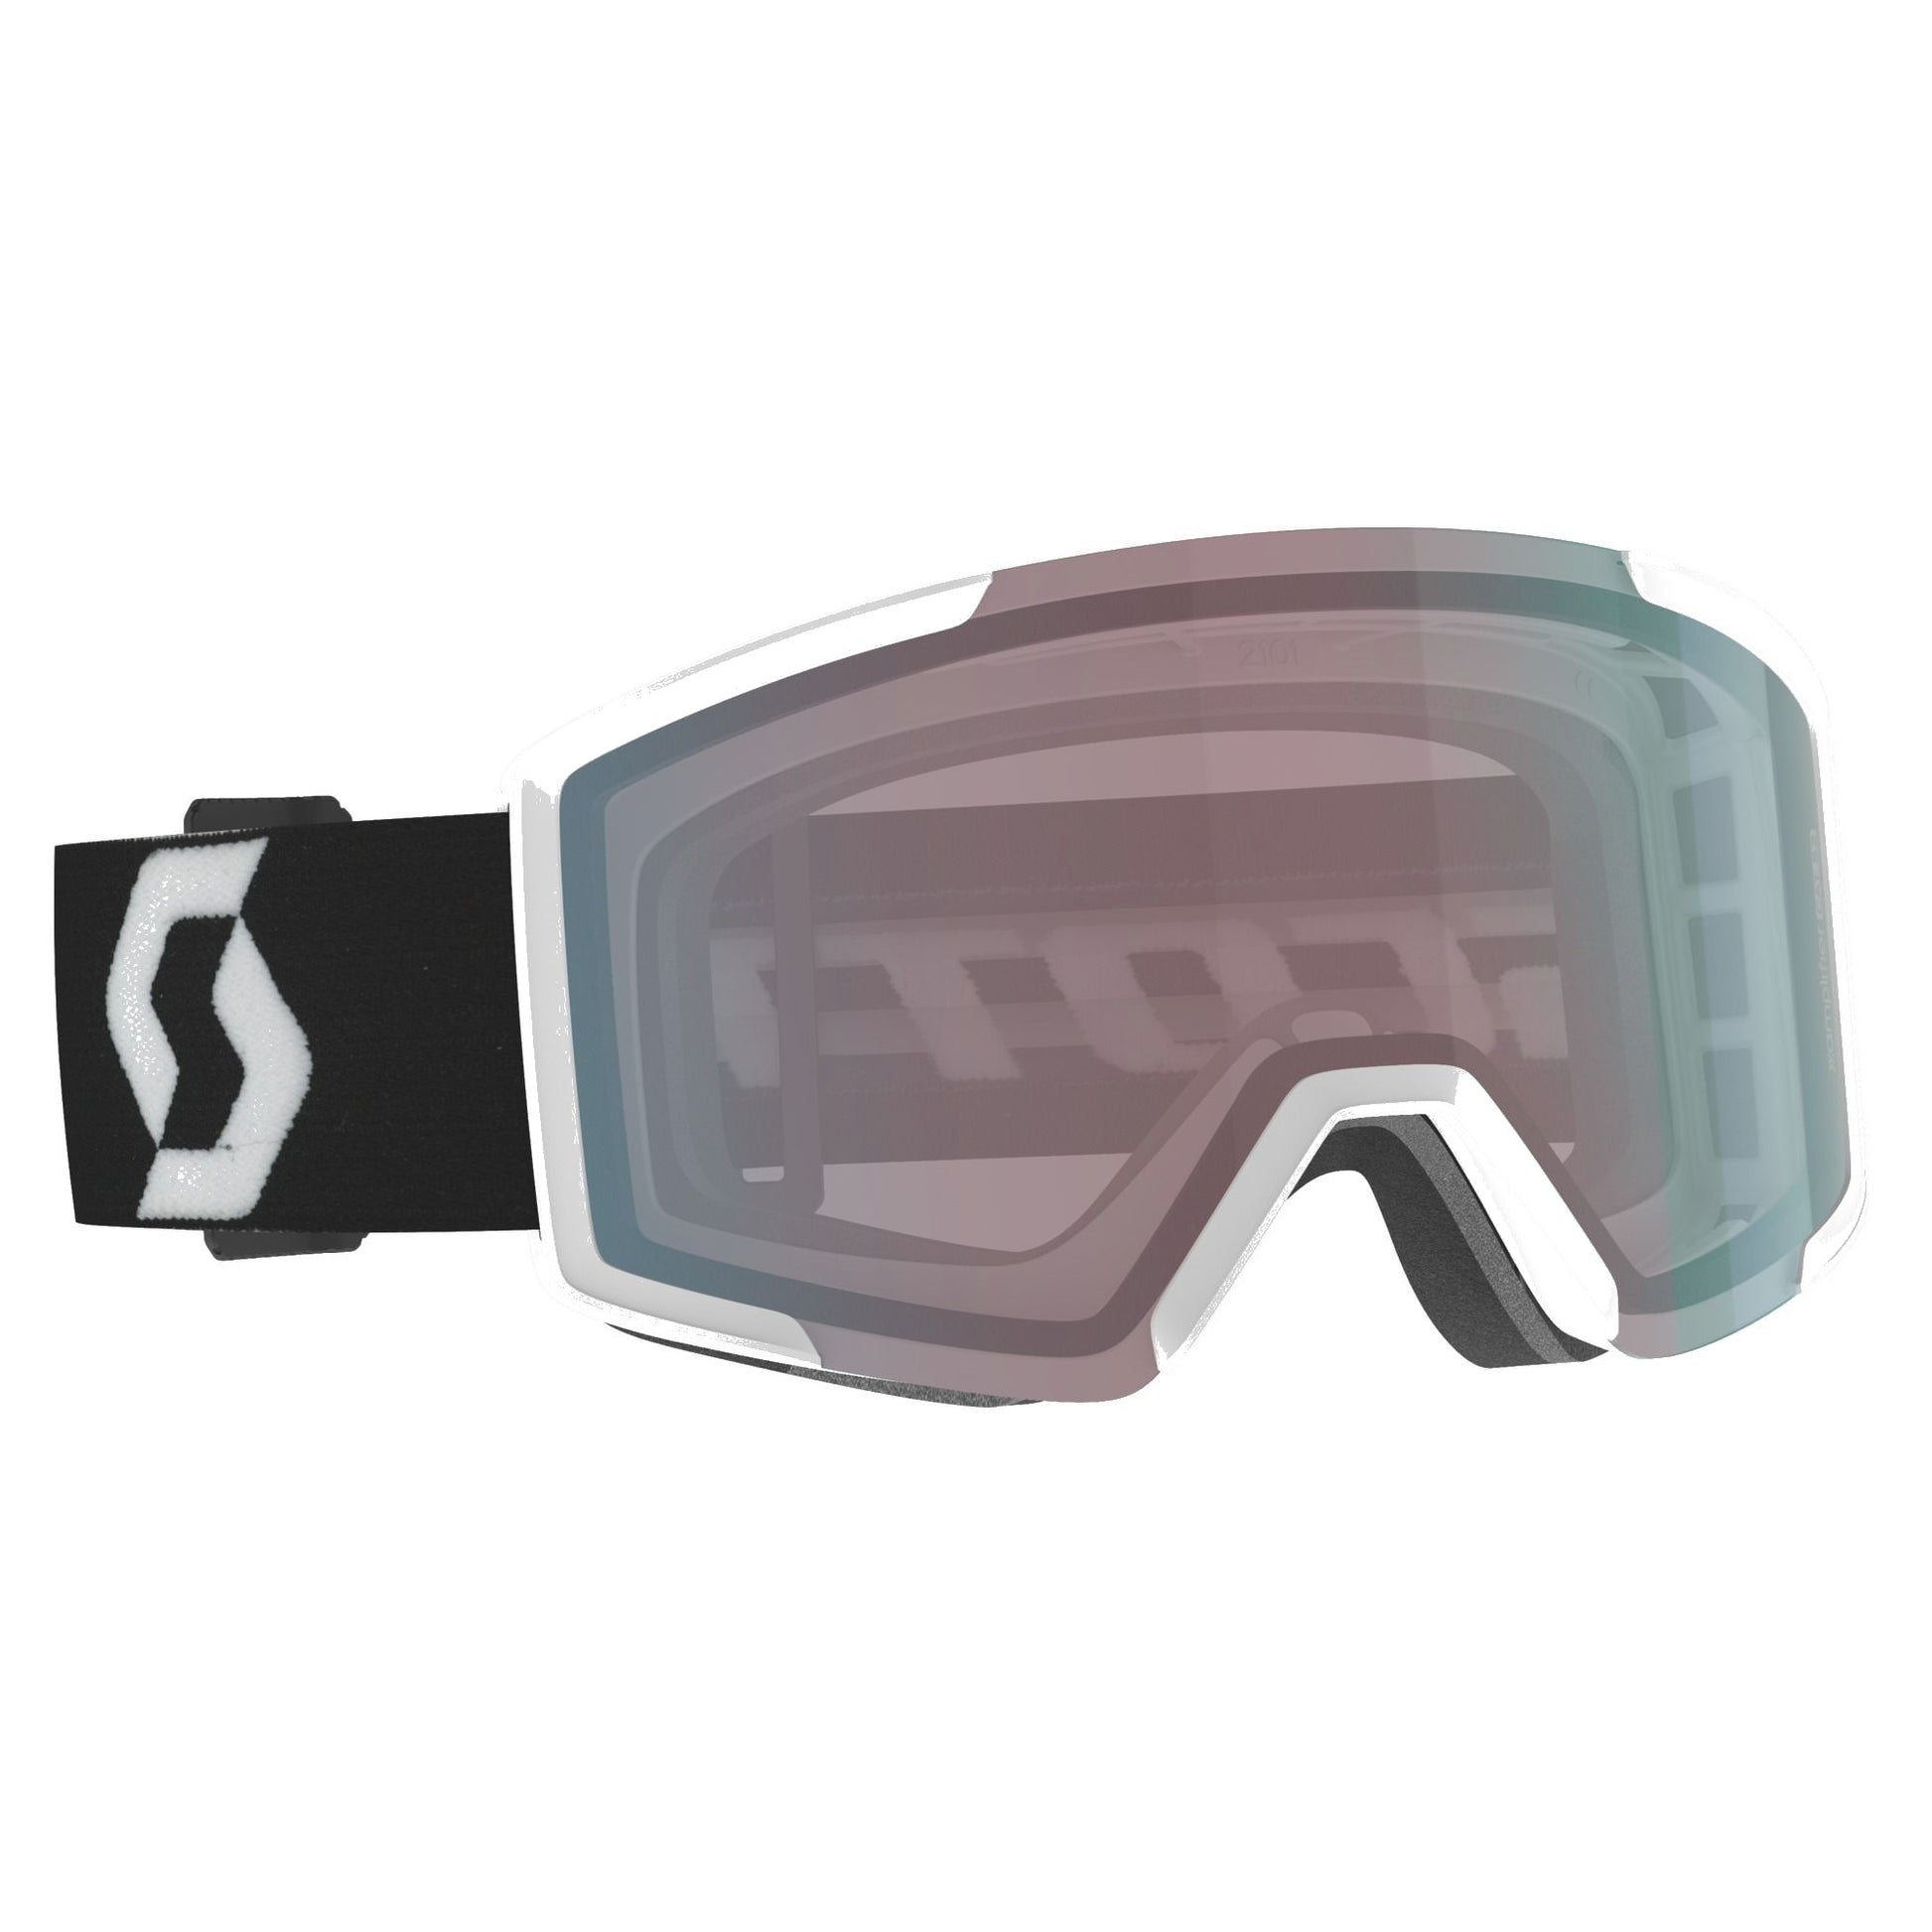 Scott Shield Snow Goggle + Extra Lens Team White/Black / Enhancer Aqua Chrome Snow Goggles